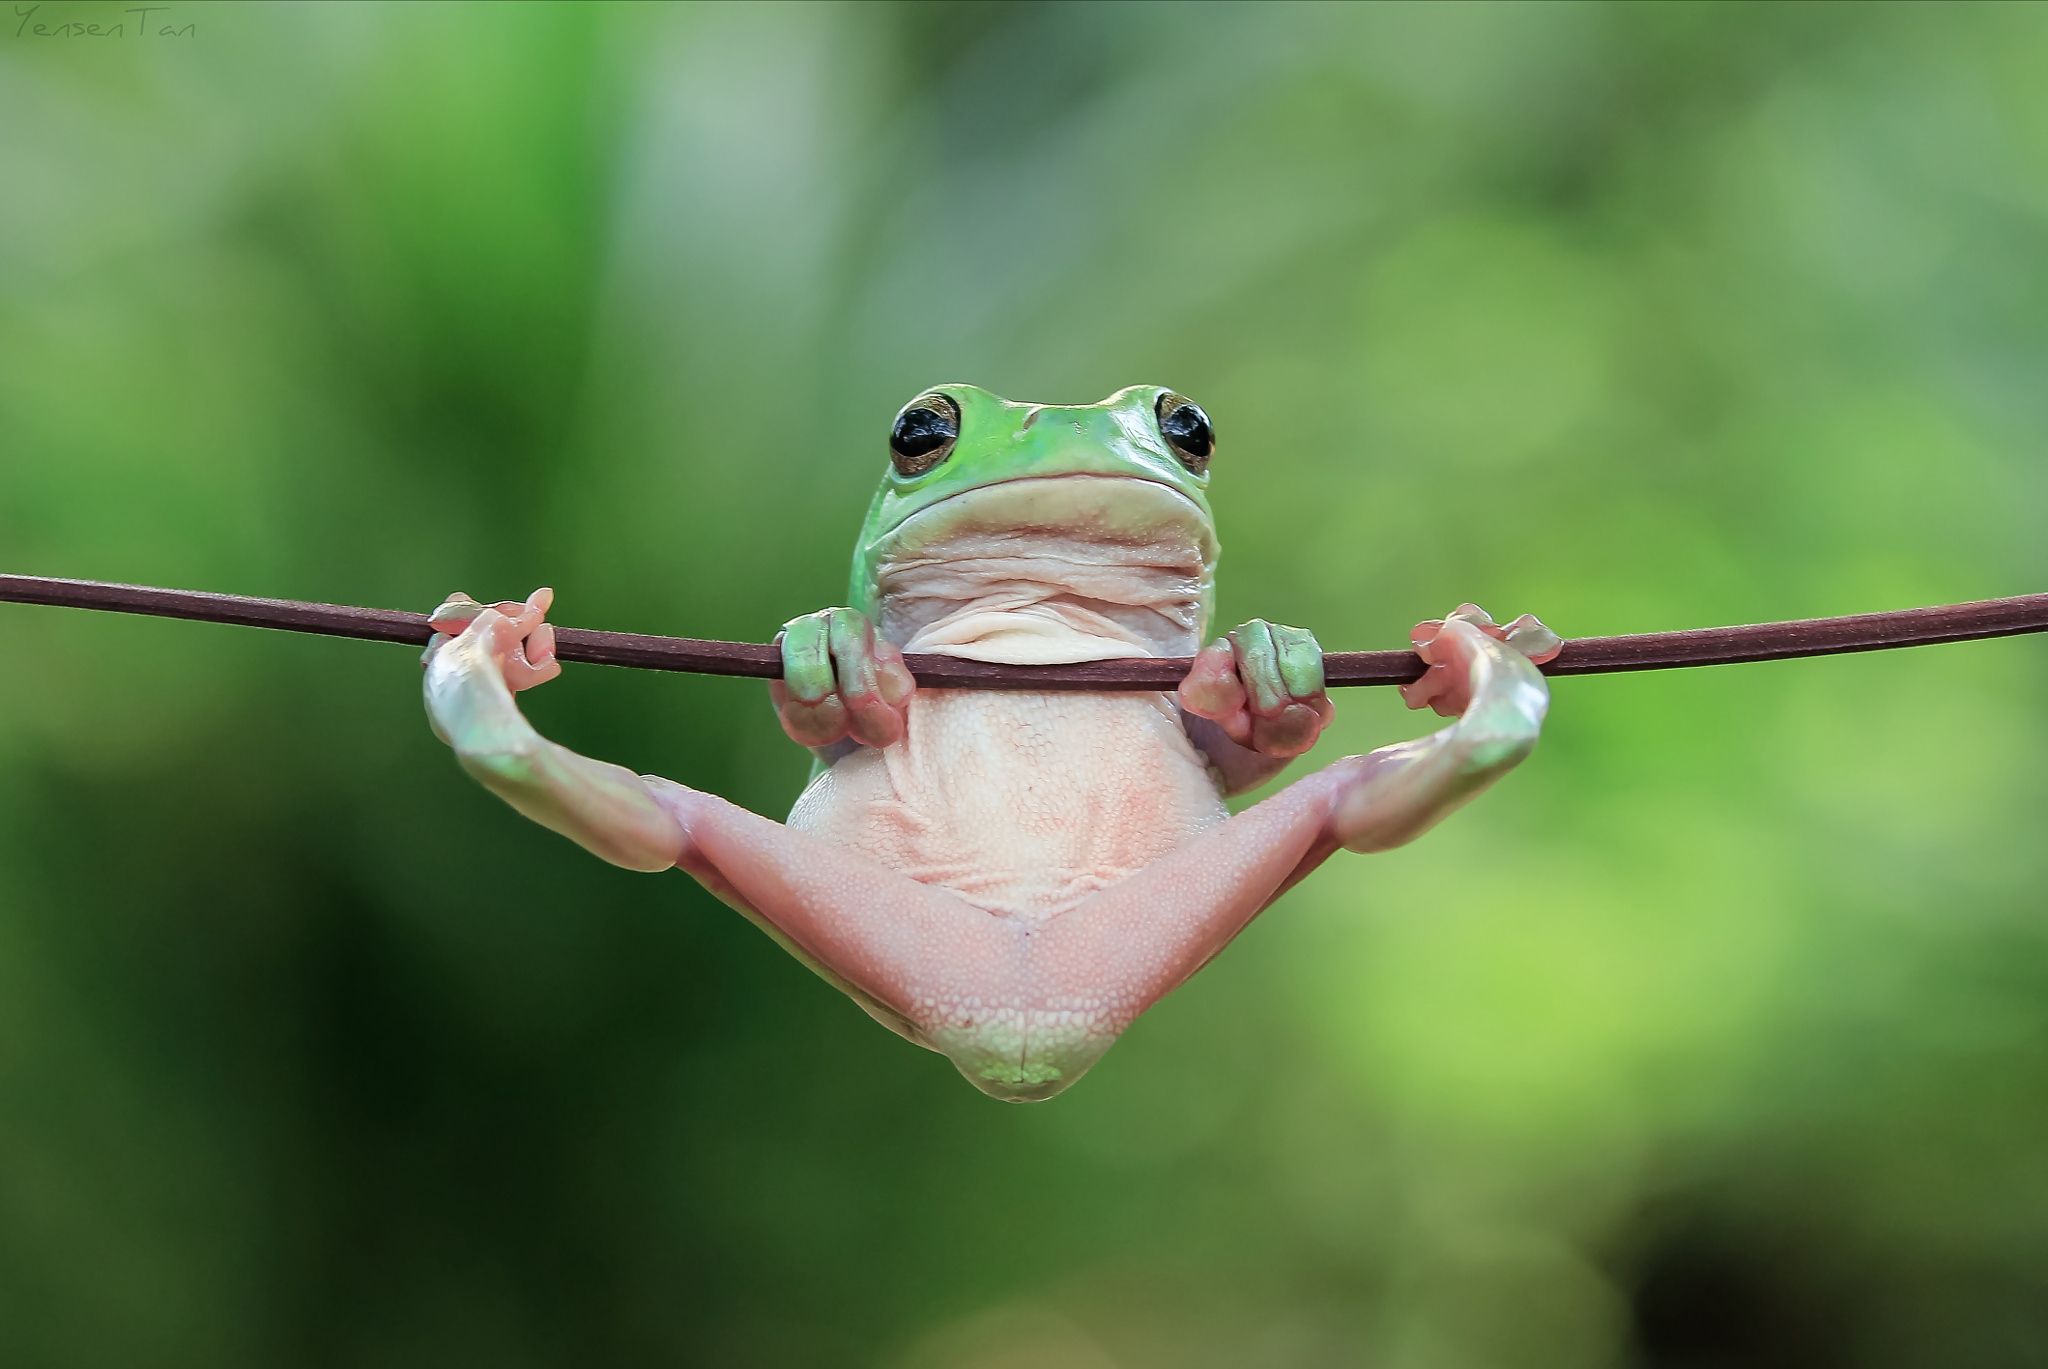 Смешная жаба